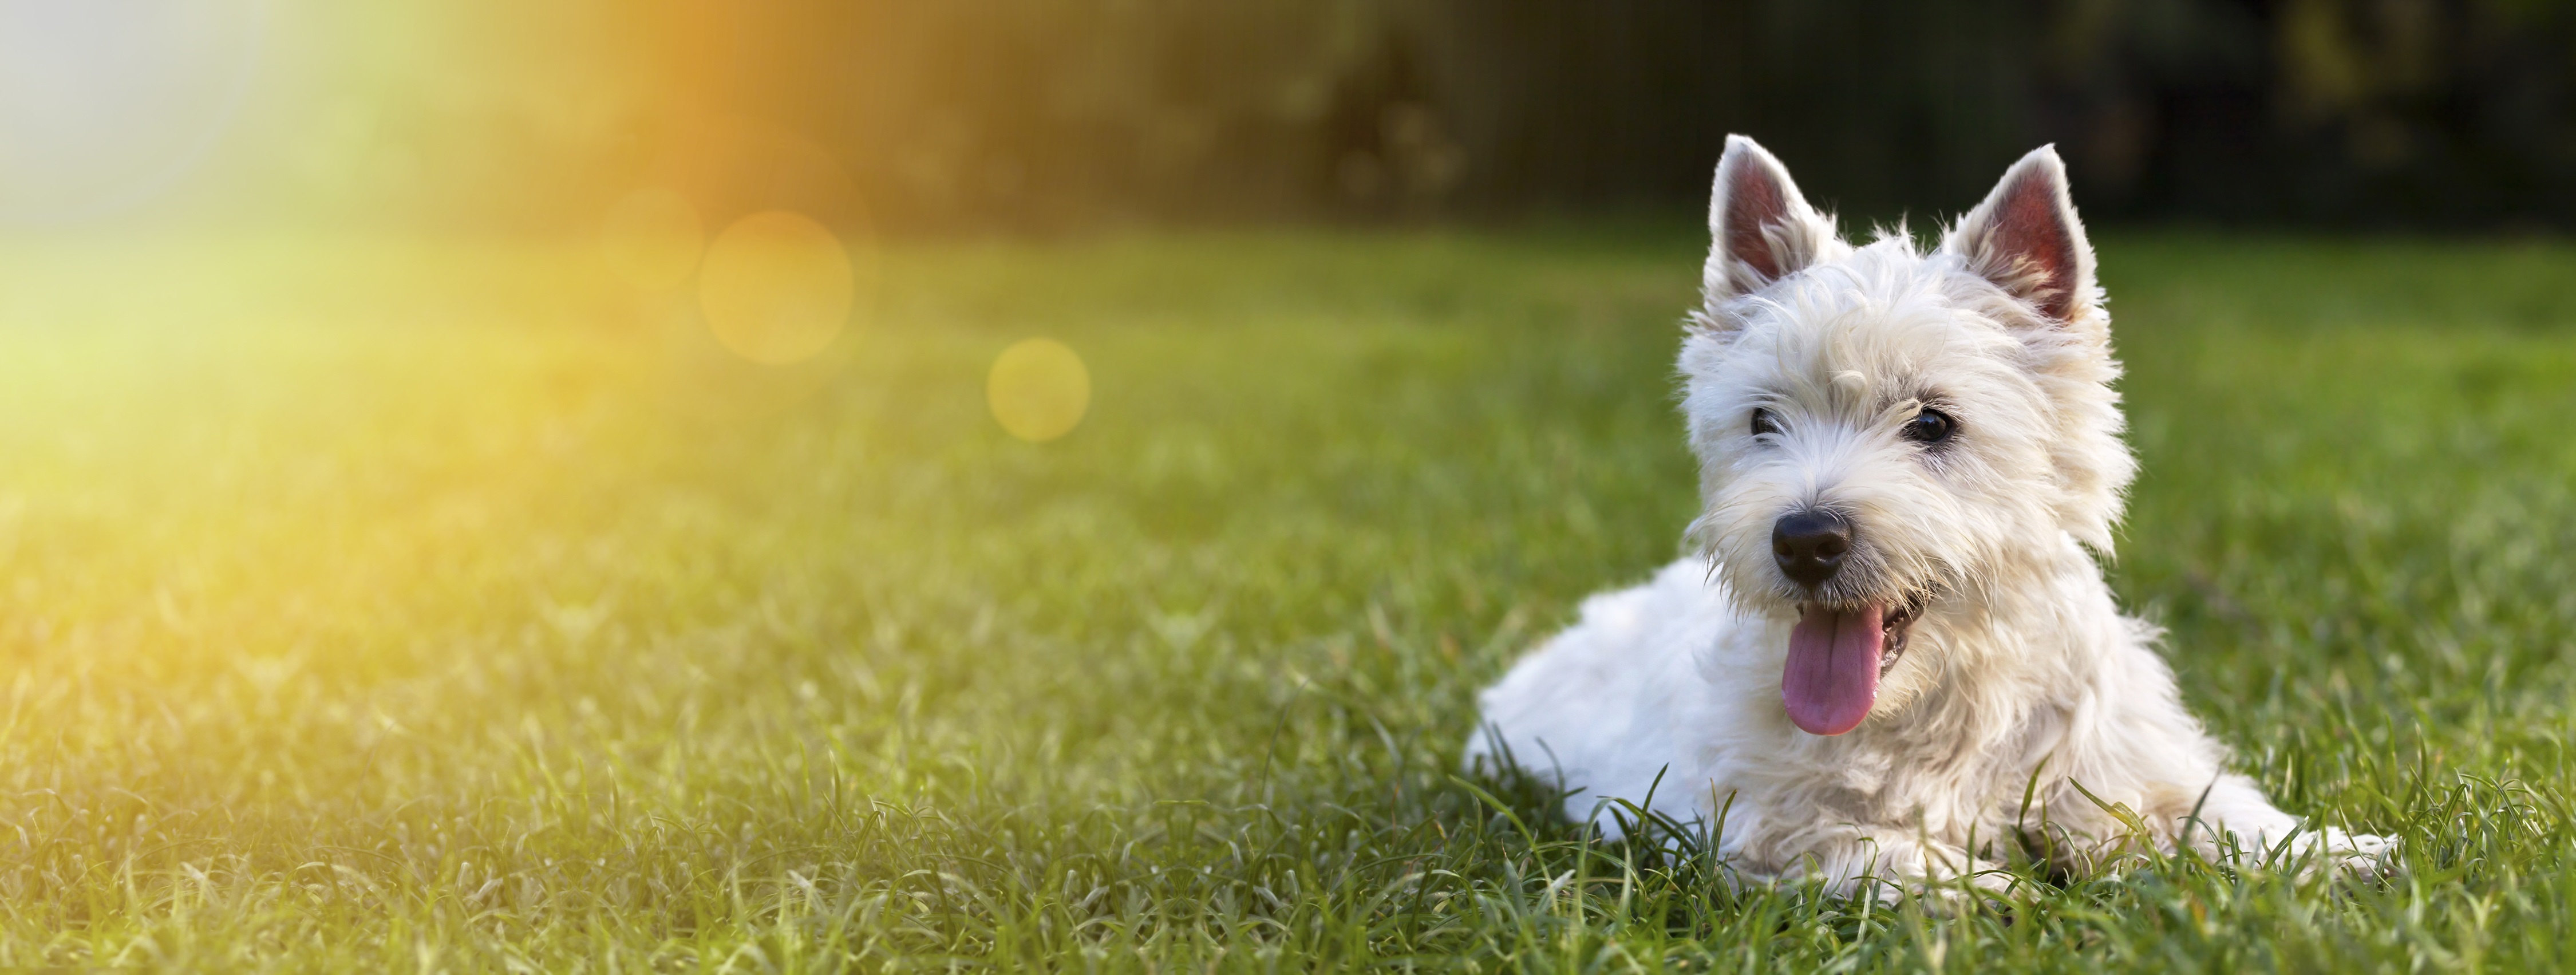 5 tipp a tökéletes fotóhoz a kutyusodról